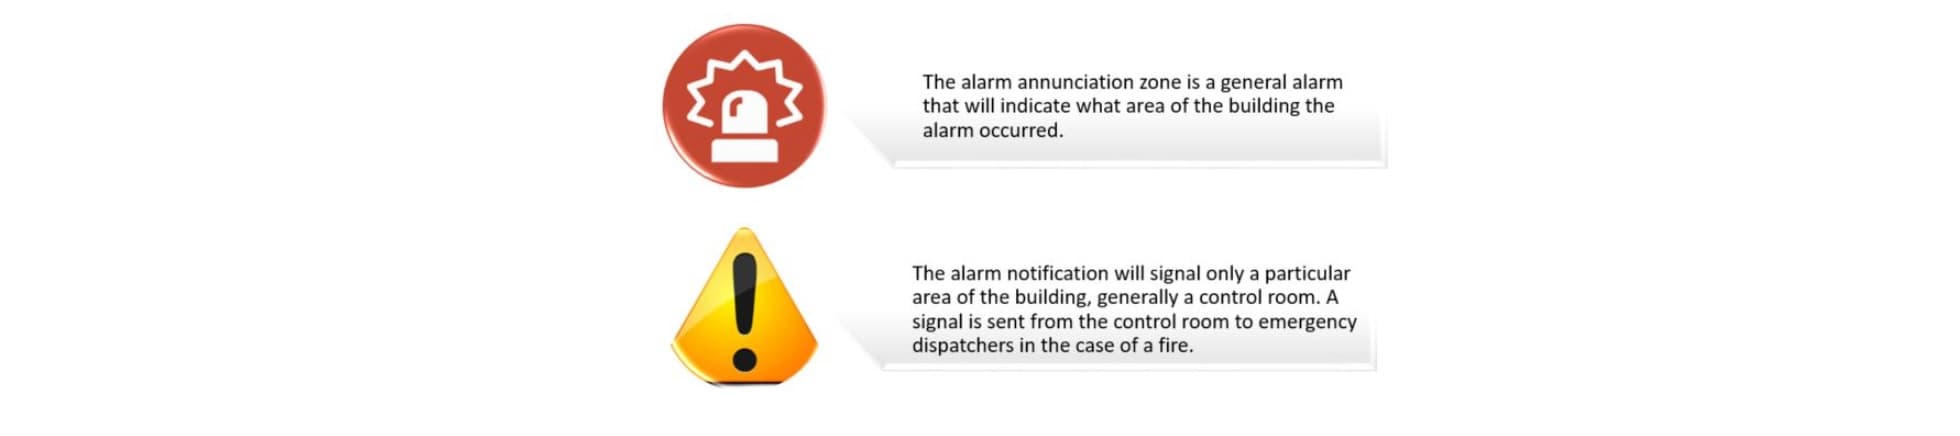 Alarm Zones